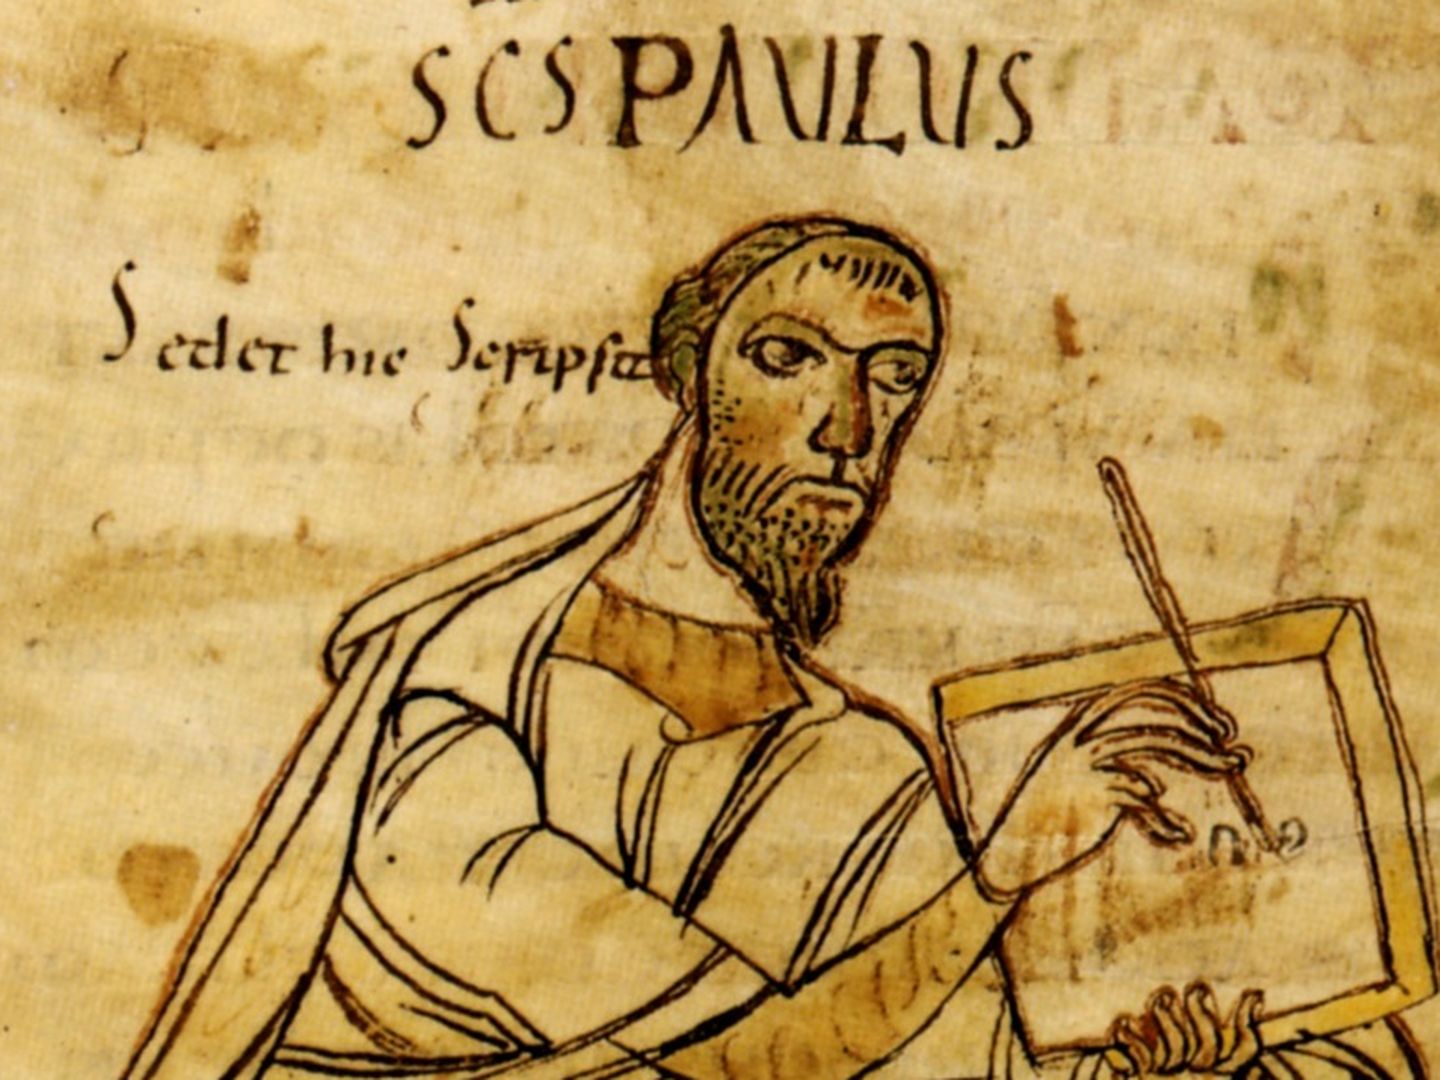 Grabado del siglo IX que muestra San Pablo escribiendo.